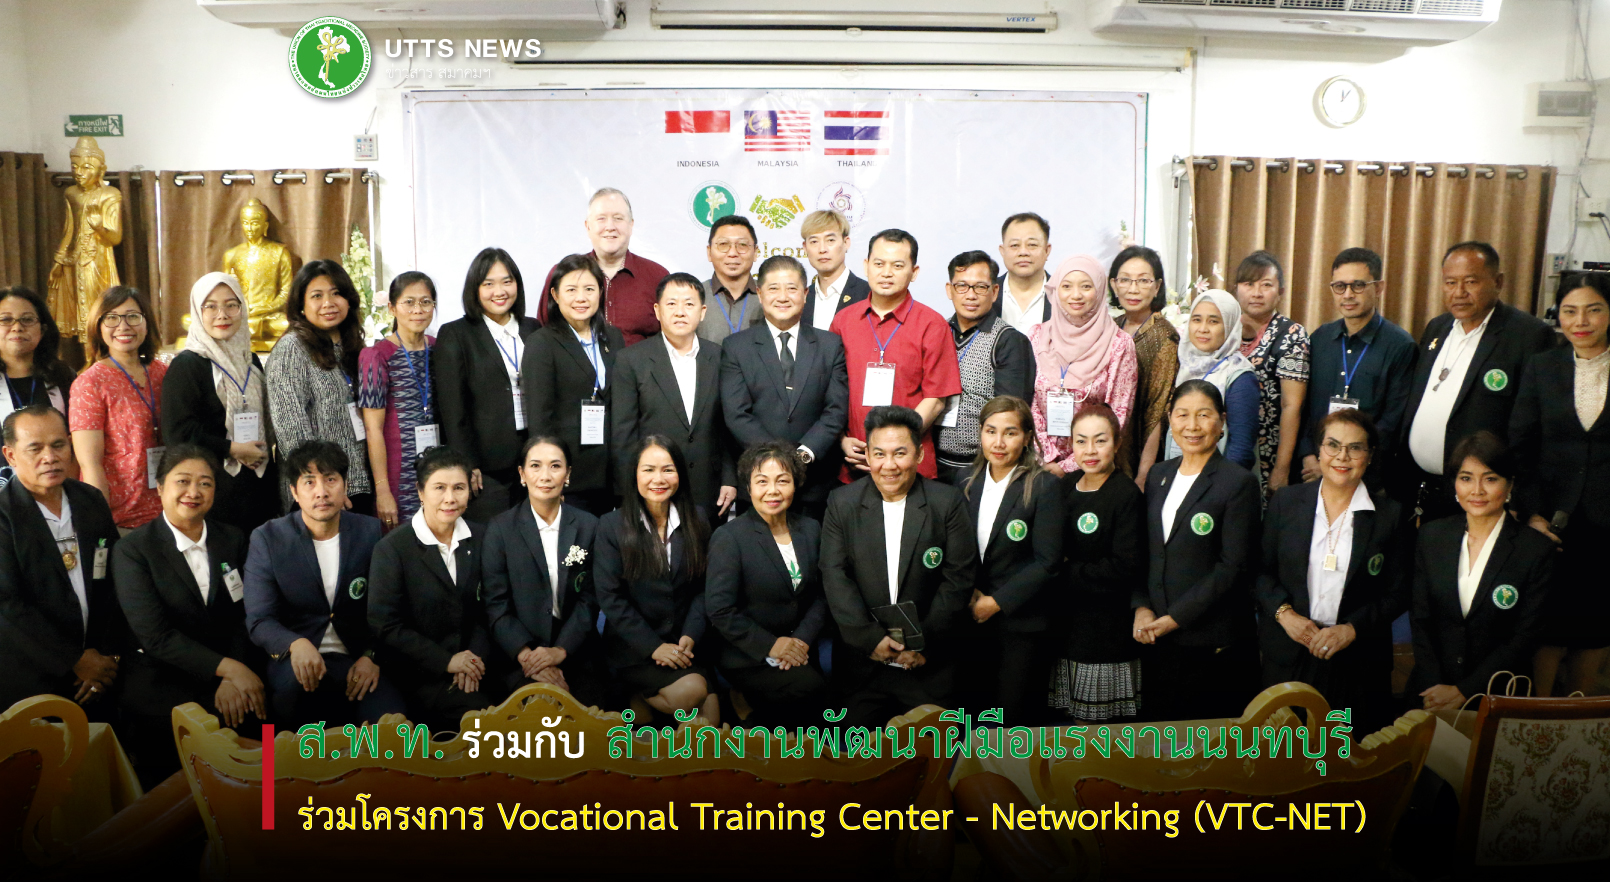 ส.พ.ท. ร่วมกับ สำนักงานพัฒนาฝีมือแรงงานนนทบุรี จัดสอบวัดระดับนวดไทยระดับ 1 ภายใต้โครงการ Vocational Training Center - Networking (VTC-NET)